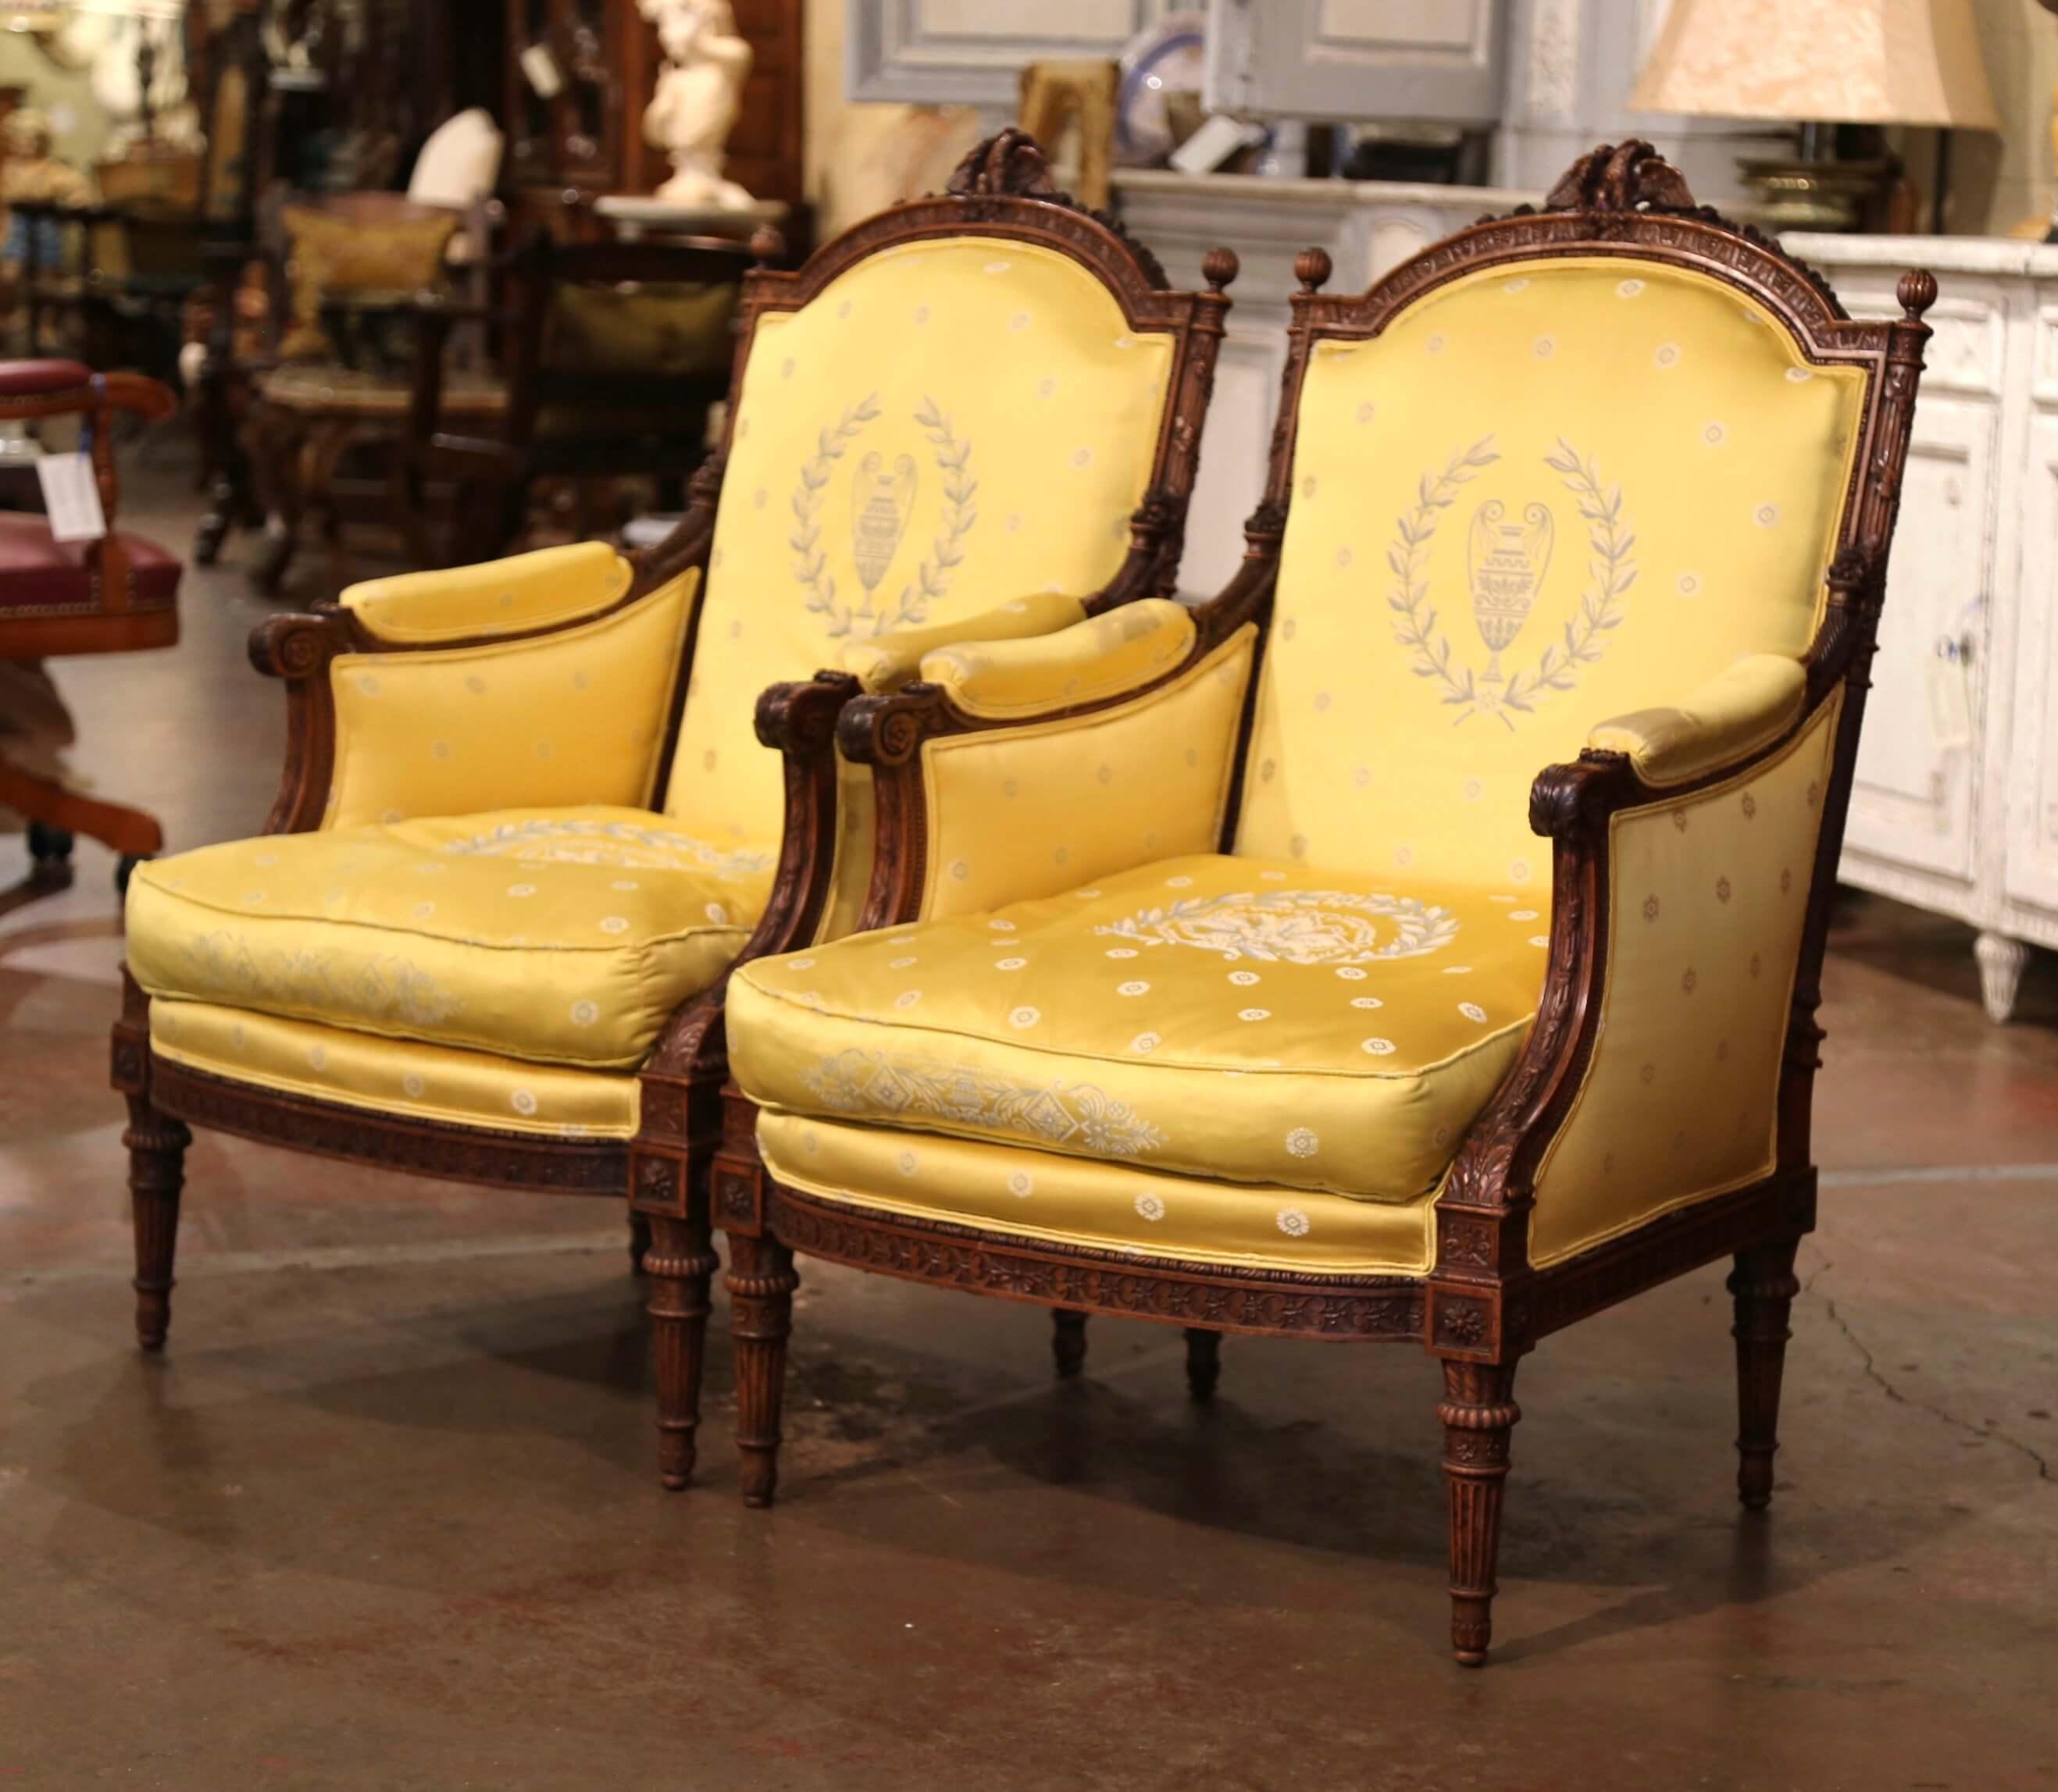 Complétez votre salon formel ou votre DEN avec cette élégante paire de fauteuils anciens. Créées en France vers 1880, ces grandes bergères classiques reposent sur des pieds fuselés et cannelés sculptés, surmontés d'un tablier en bombe. Chaque